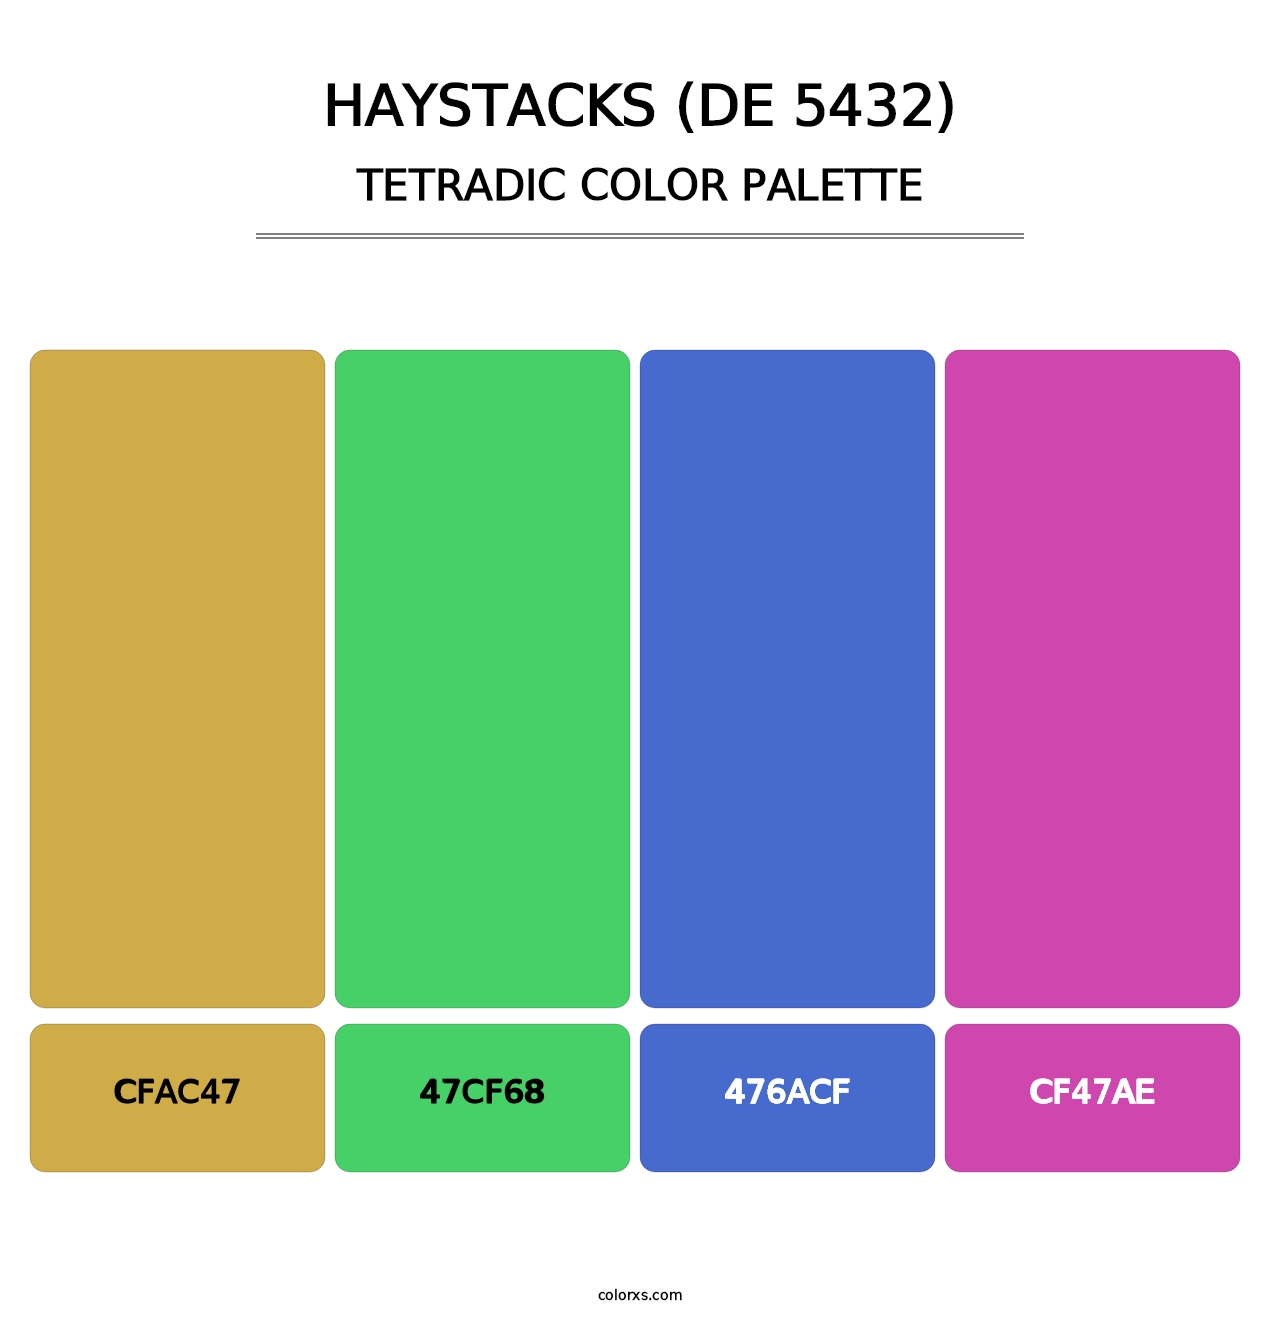 Haystacks (DE 5432) - Tetradic Color Palette